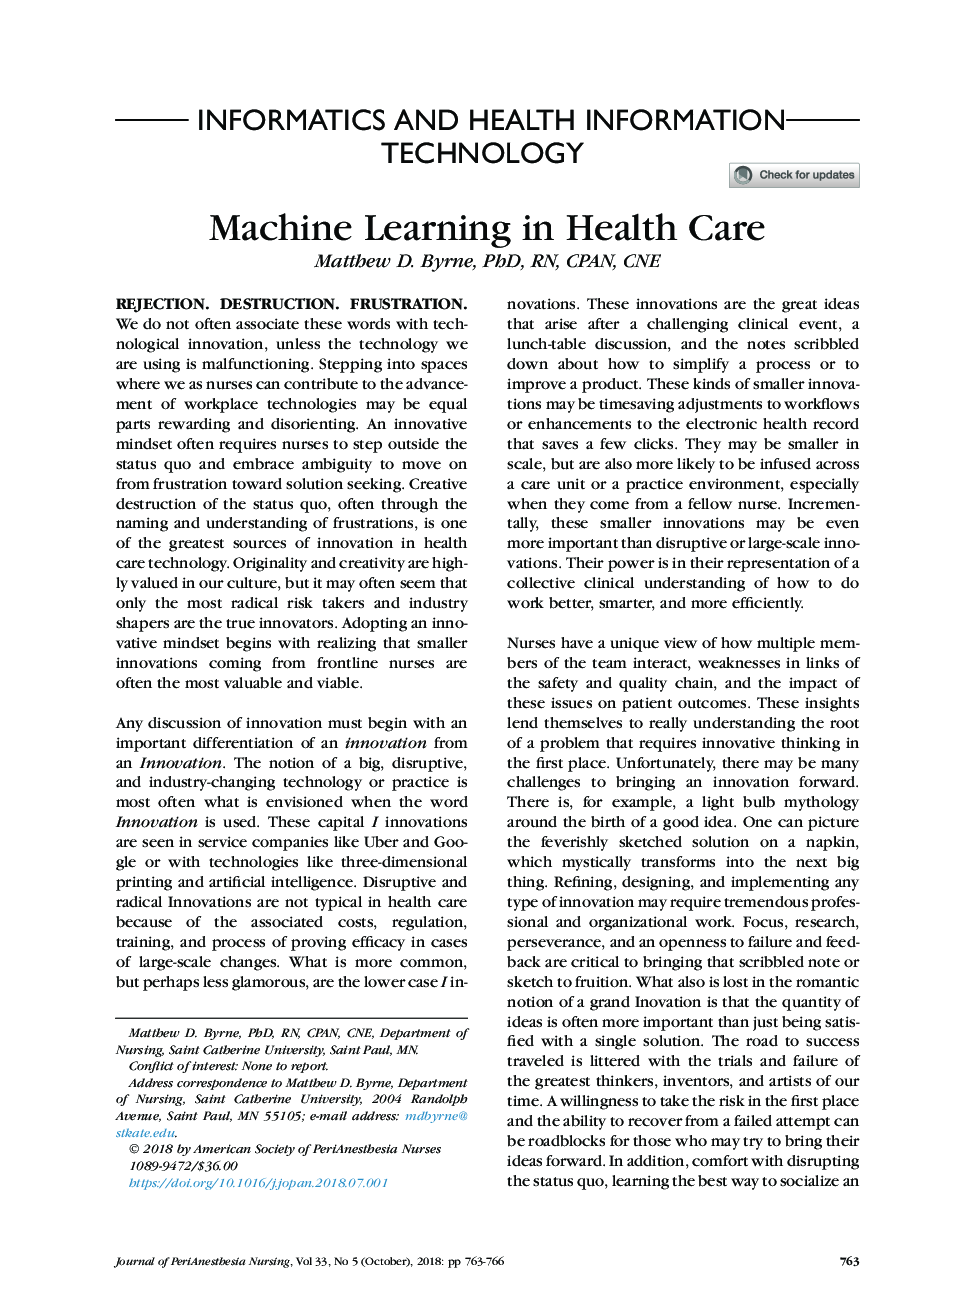 آموزش ماشین در مراقبت های بهداشتی